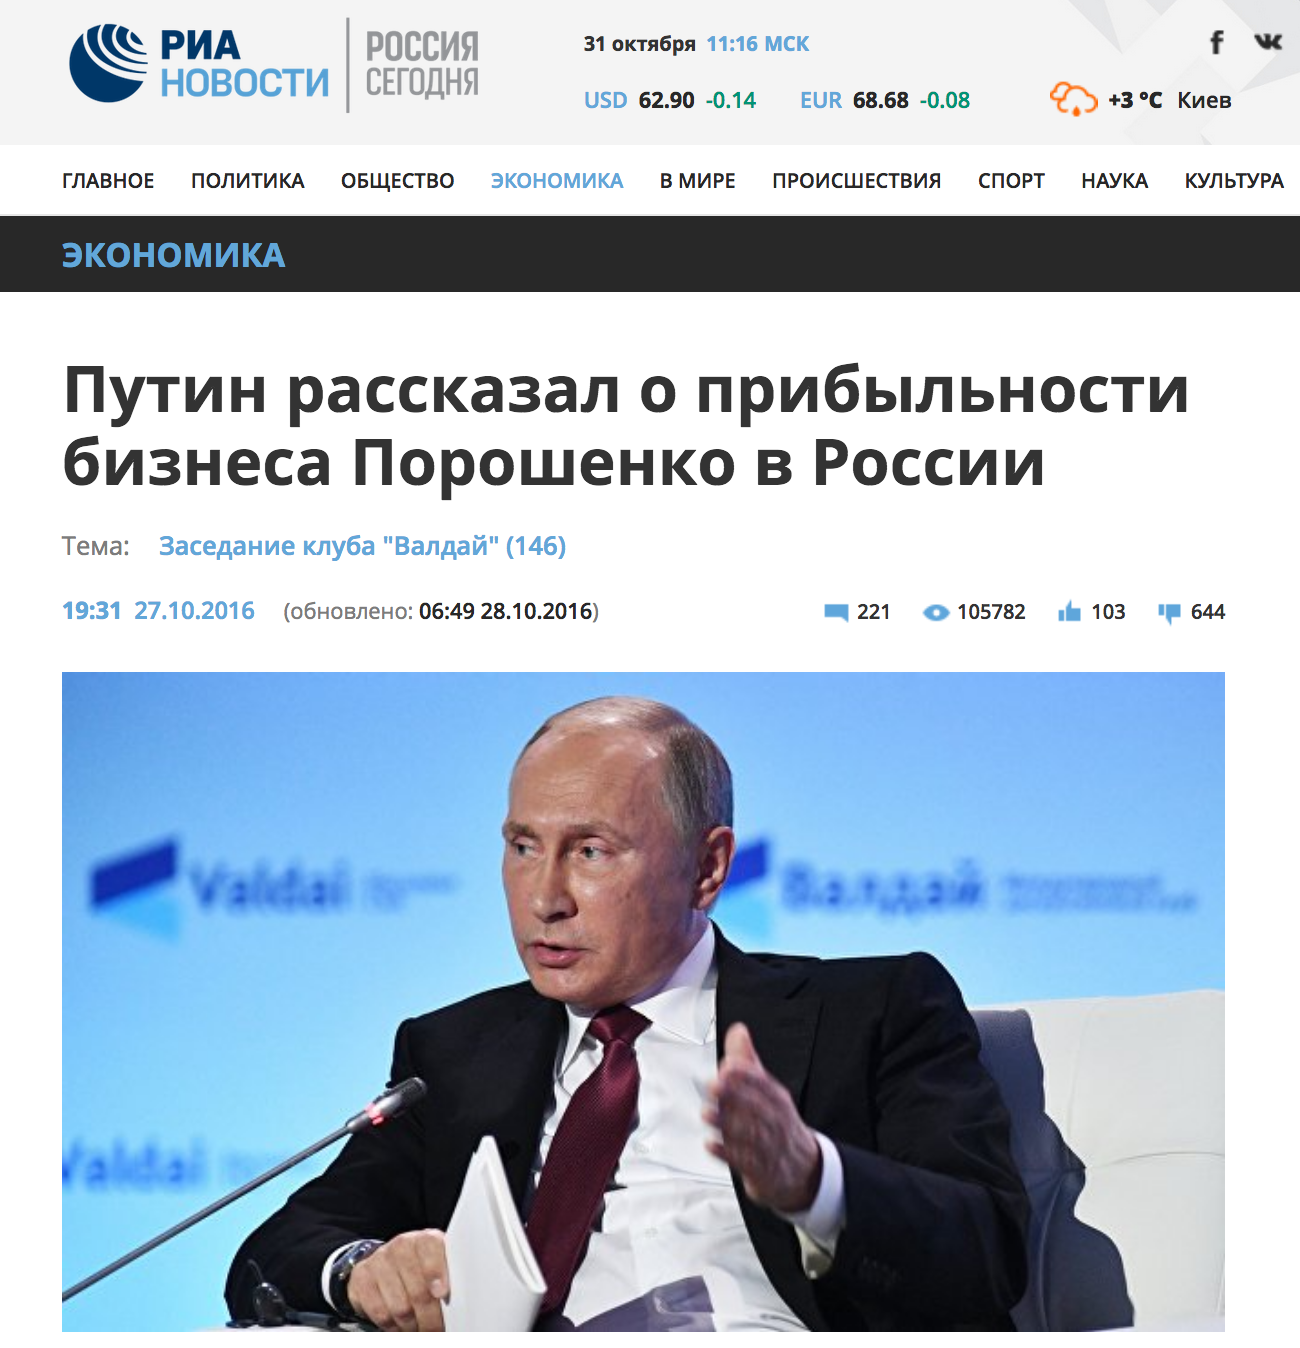 Скриншот сайта Риа Новости